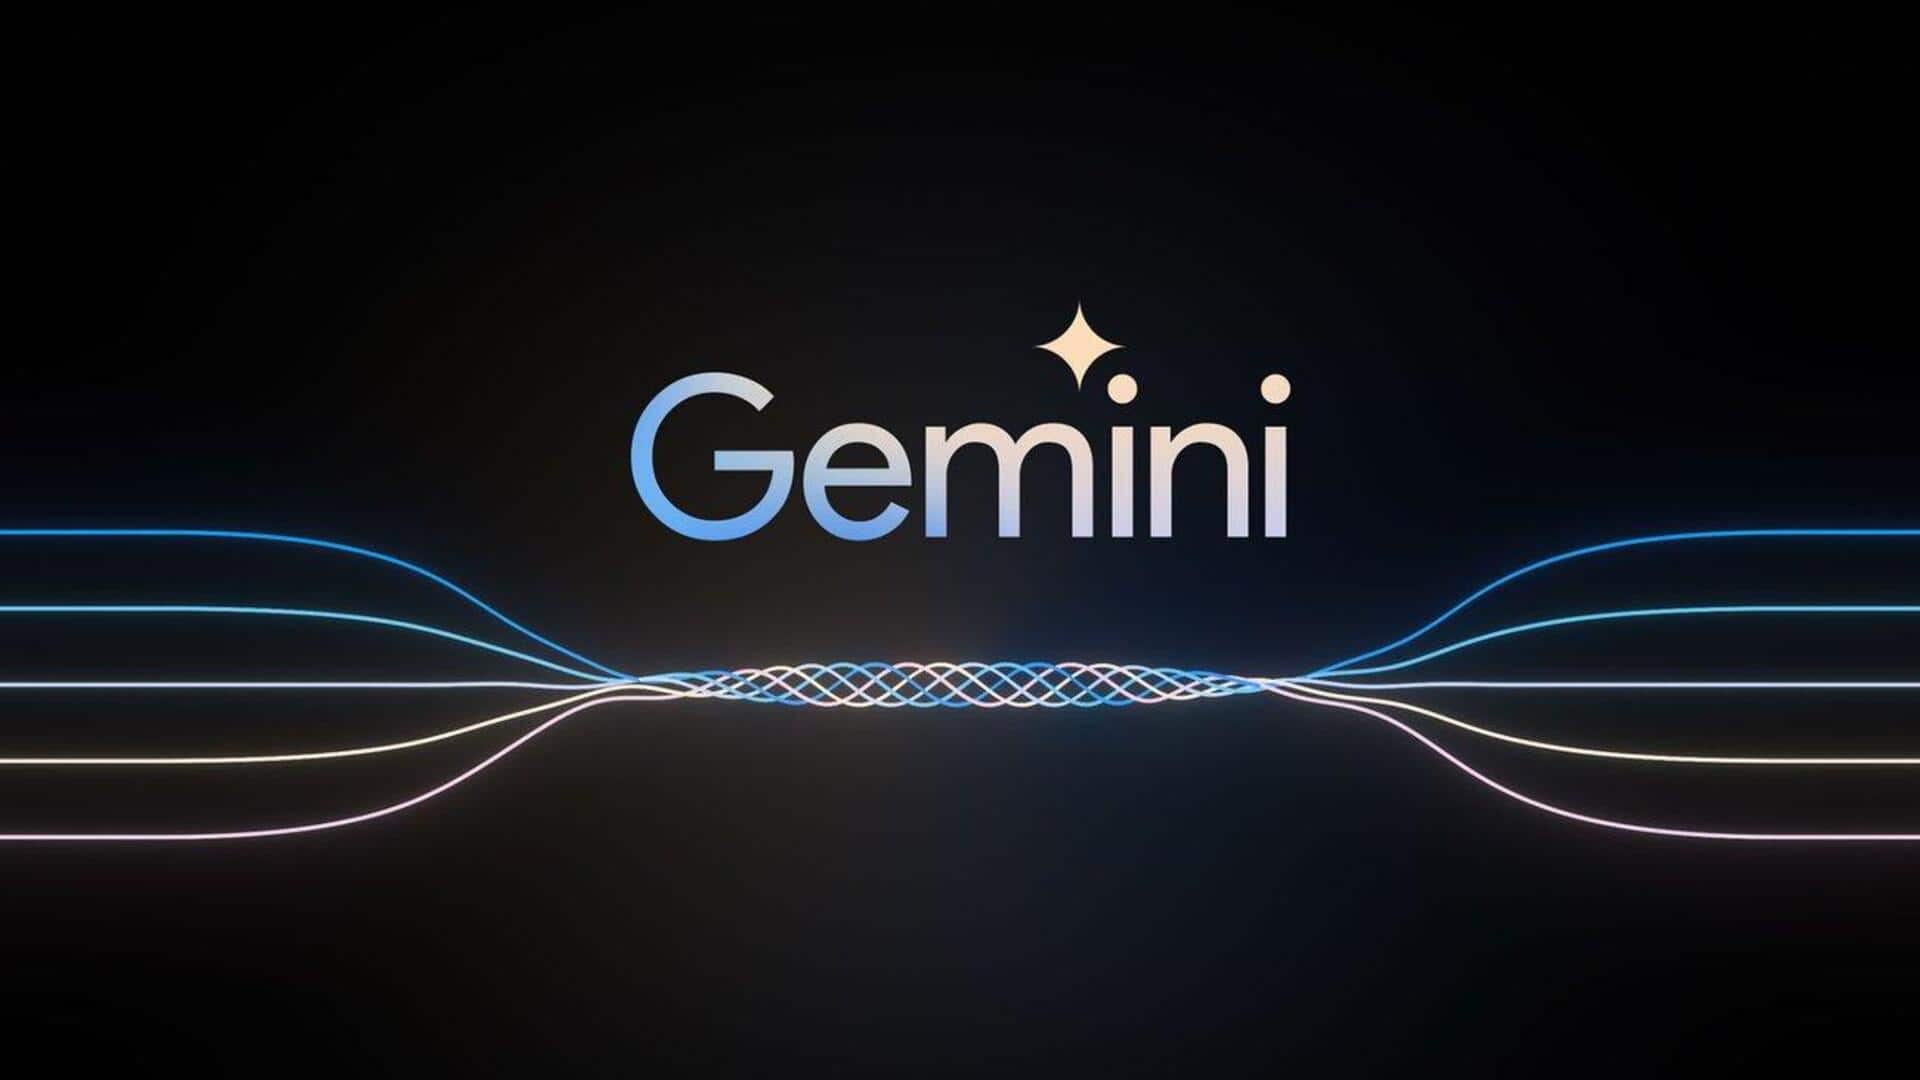 Google's Gemini AI models struggling to analyze large datasets